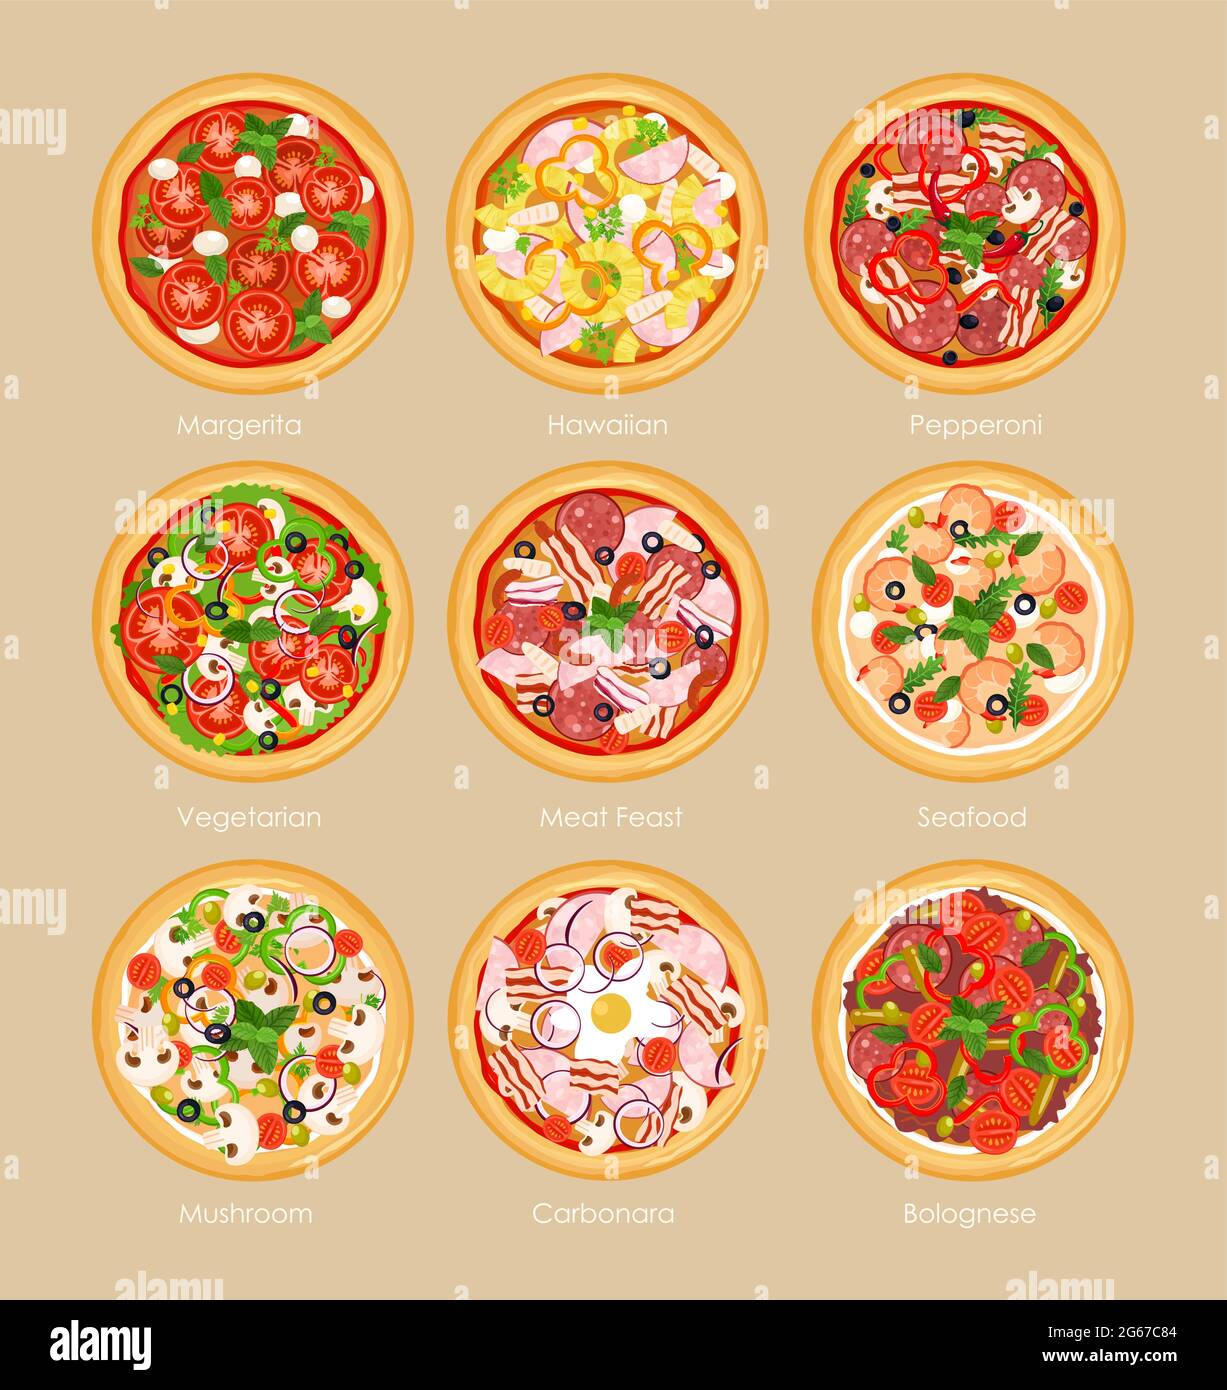 Juego de ilustraciones vectoriales de pizza con diferentes ingredientes, pizza vegetariana, margarita y mariscos. Concepto de menú de pizza en estilo plano. Ilustración del Vector